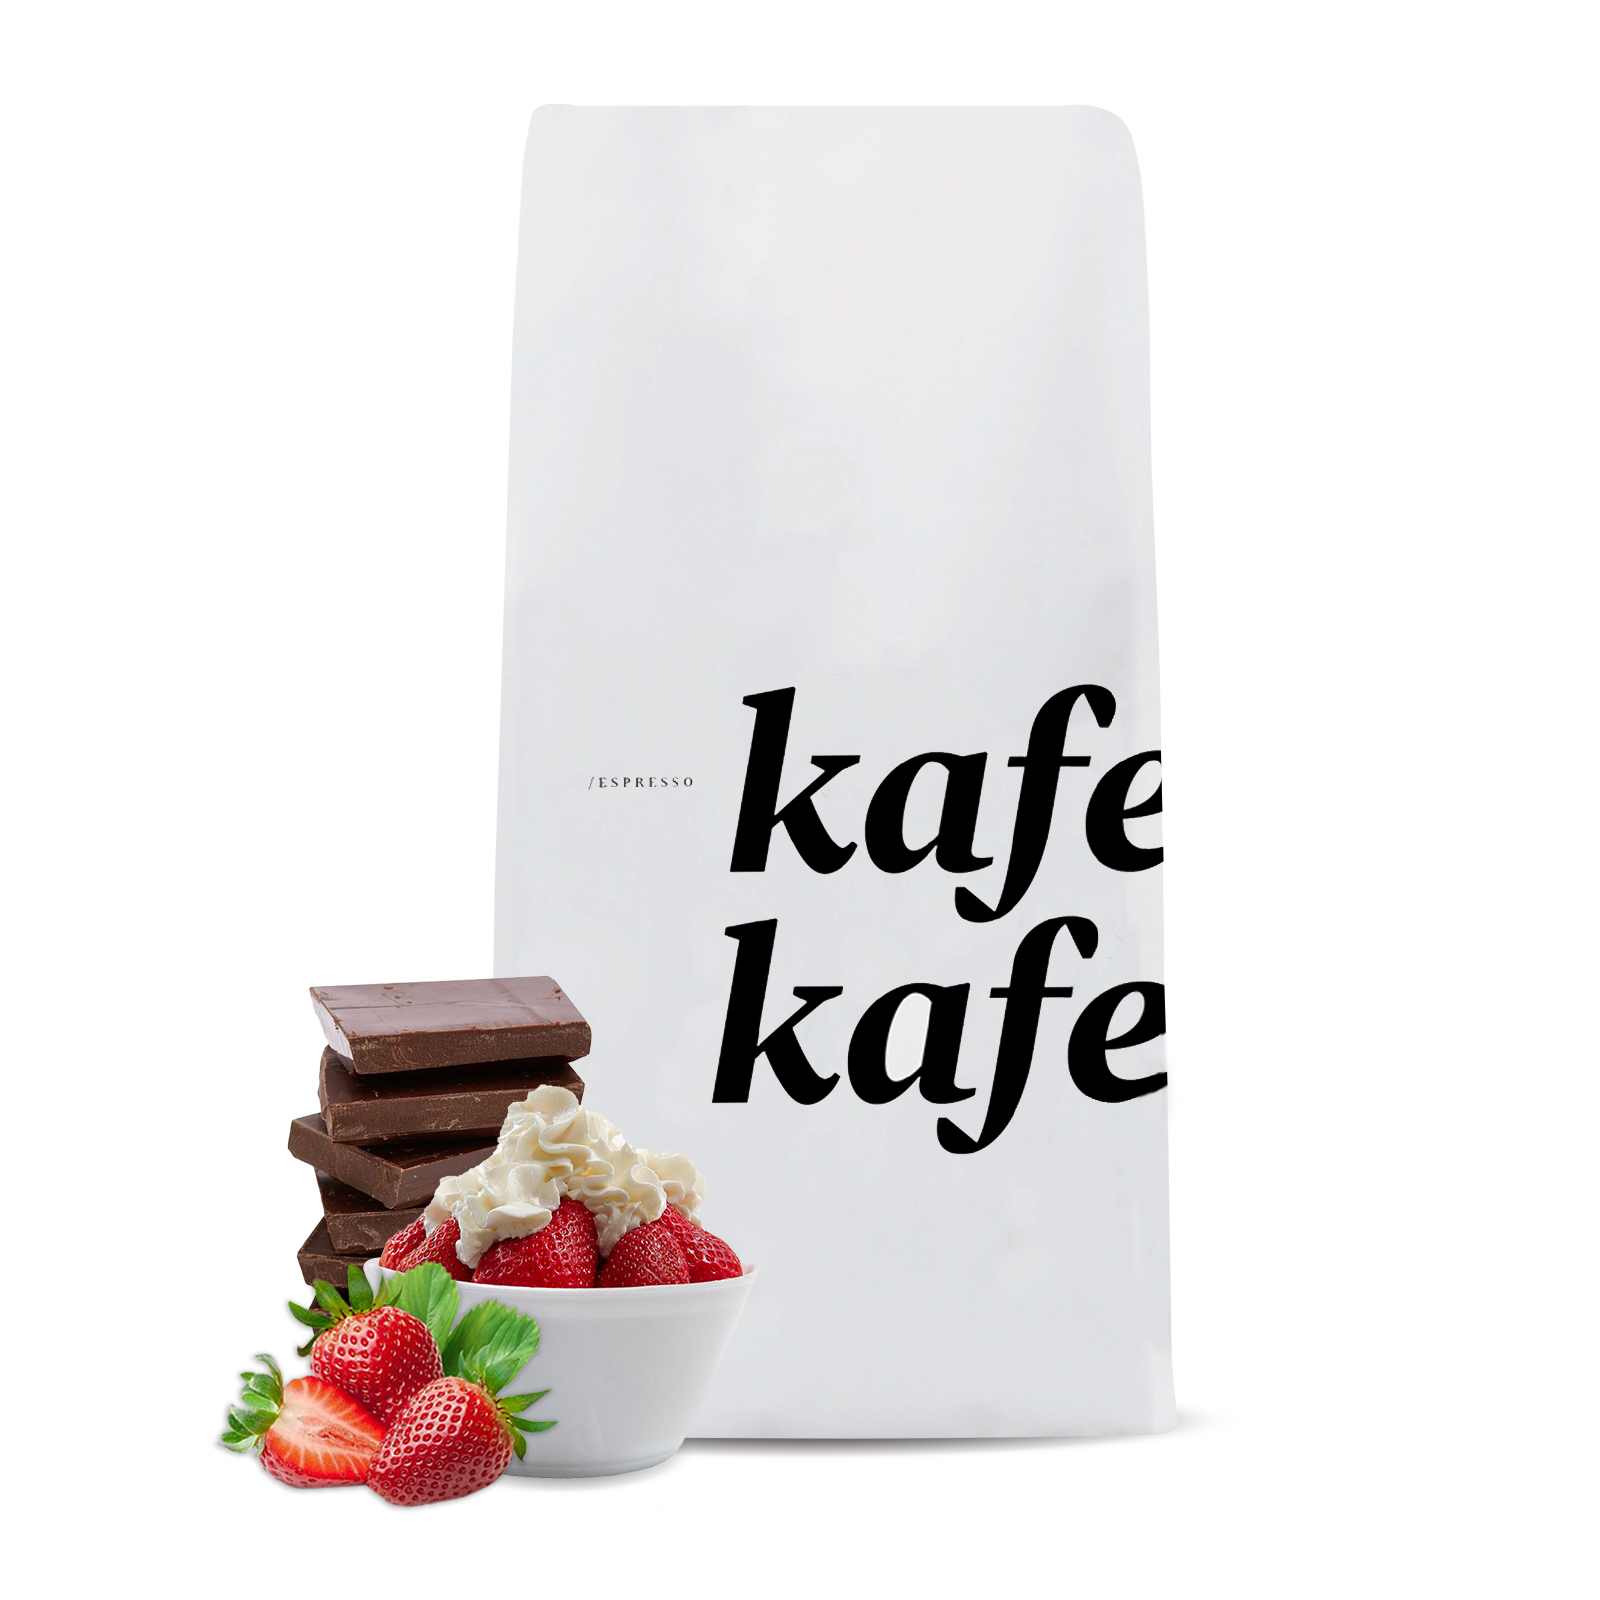 Výběrová káva Kmen Coffee Roasters Etiopie KAFE KAFE - 1000g - 2023